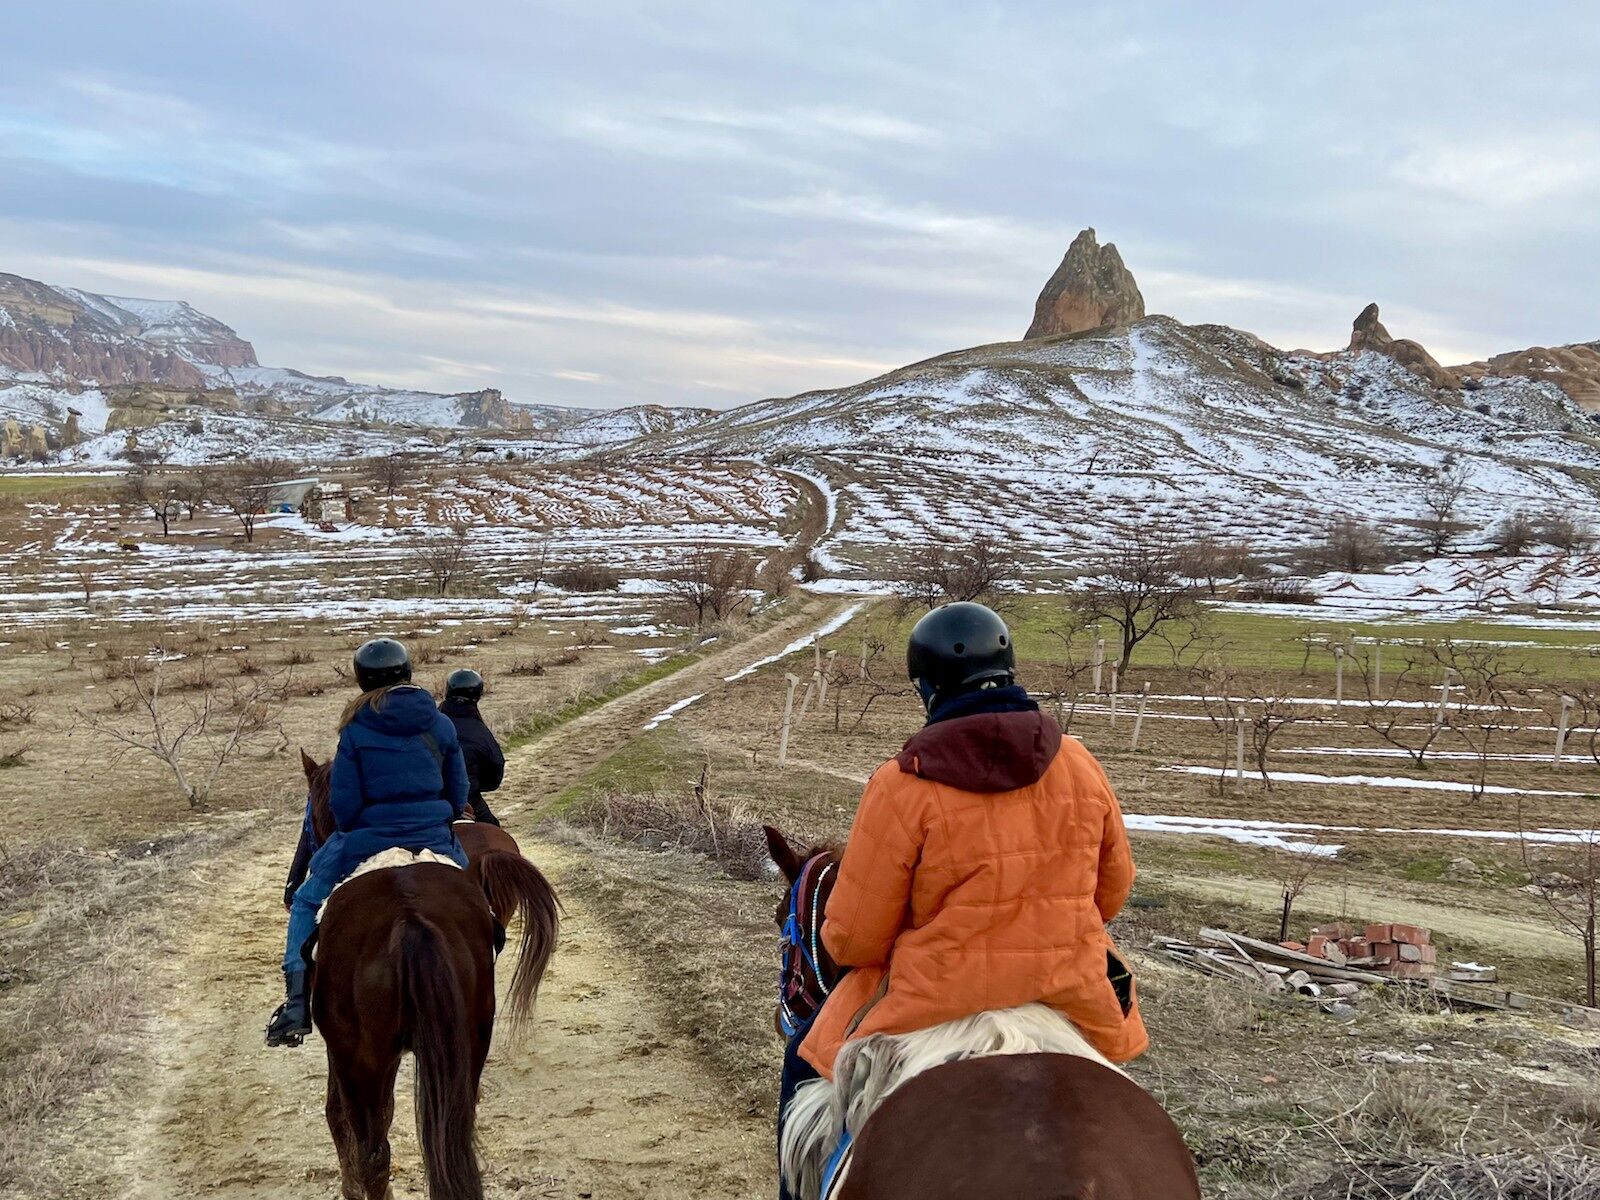 Horseback riding in Cappadocia, Turkey